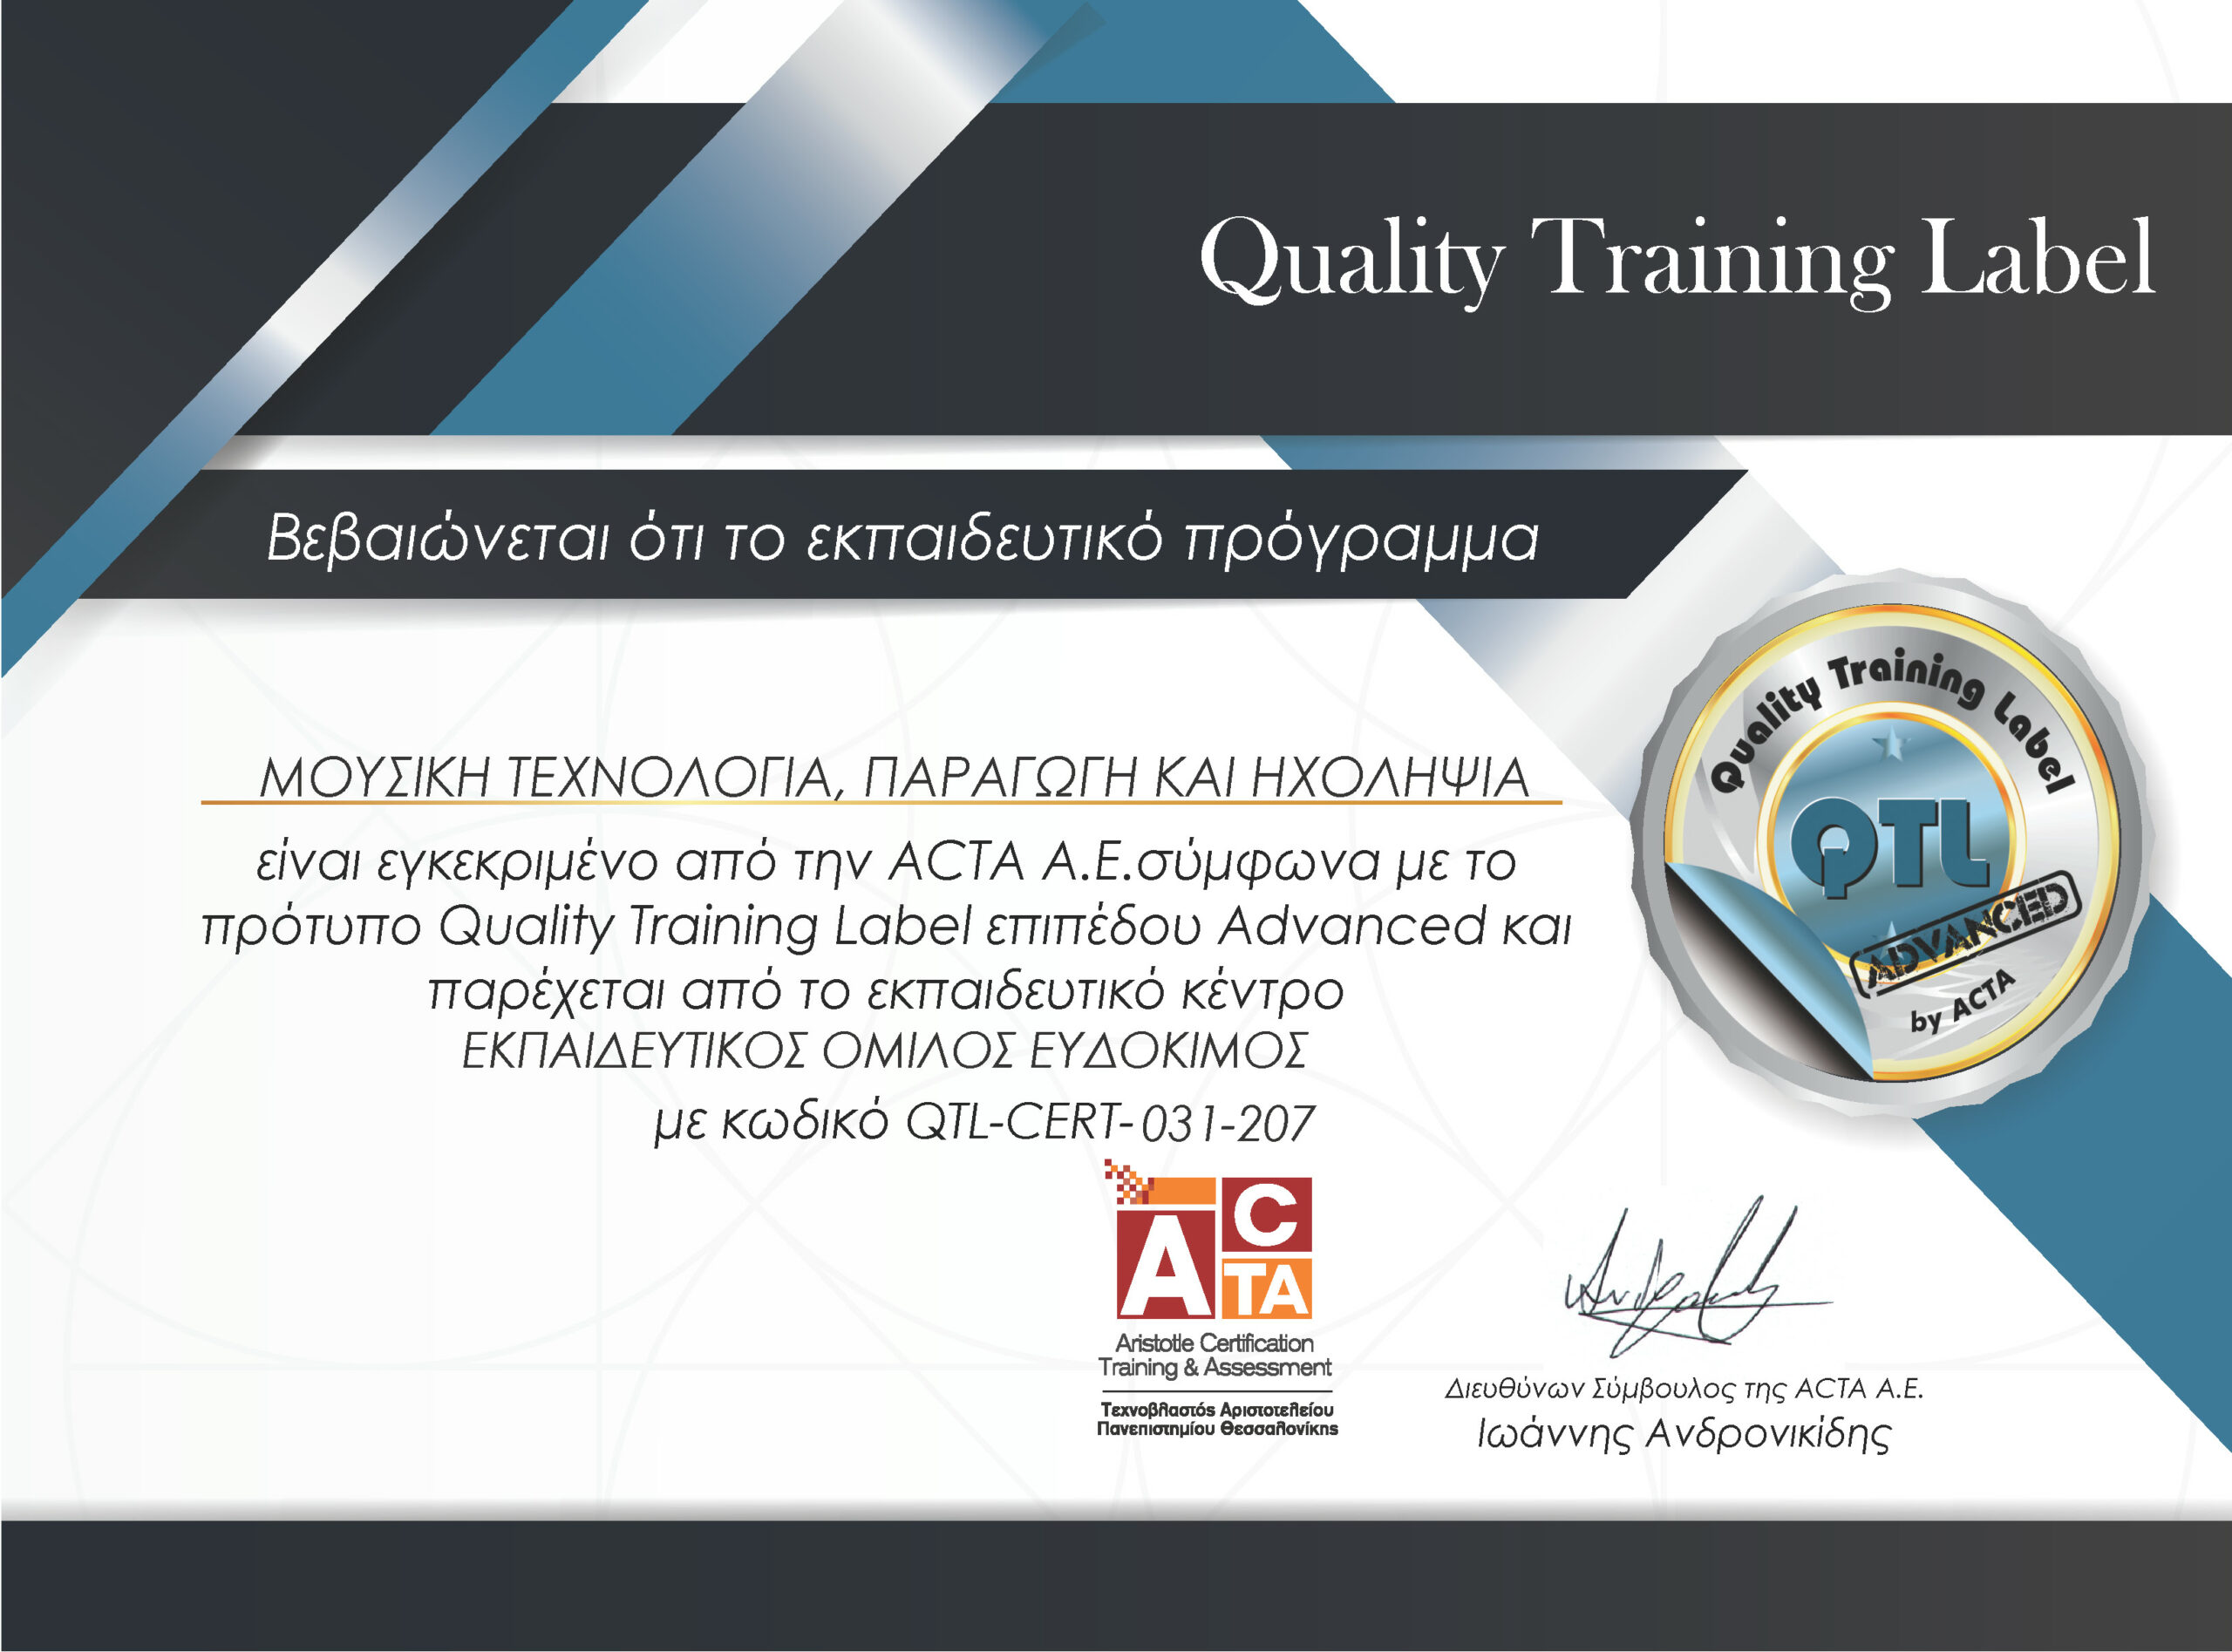 Μουσική τεχνολογία, παραγωγή και ηχοληψία - Πιστοποιημένο εκπαιδευτικό πρόγραμμα της ACTA σύμφωνα με το πρότυπο QTL επιπέδου Advanced